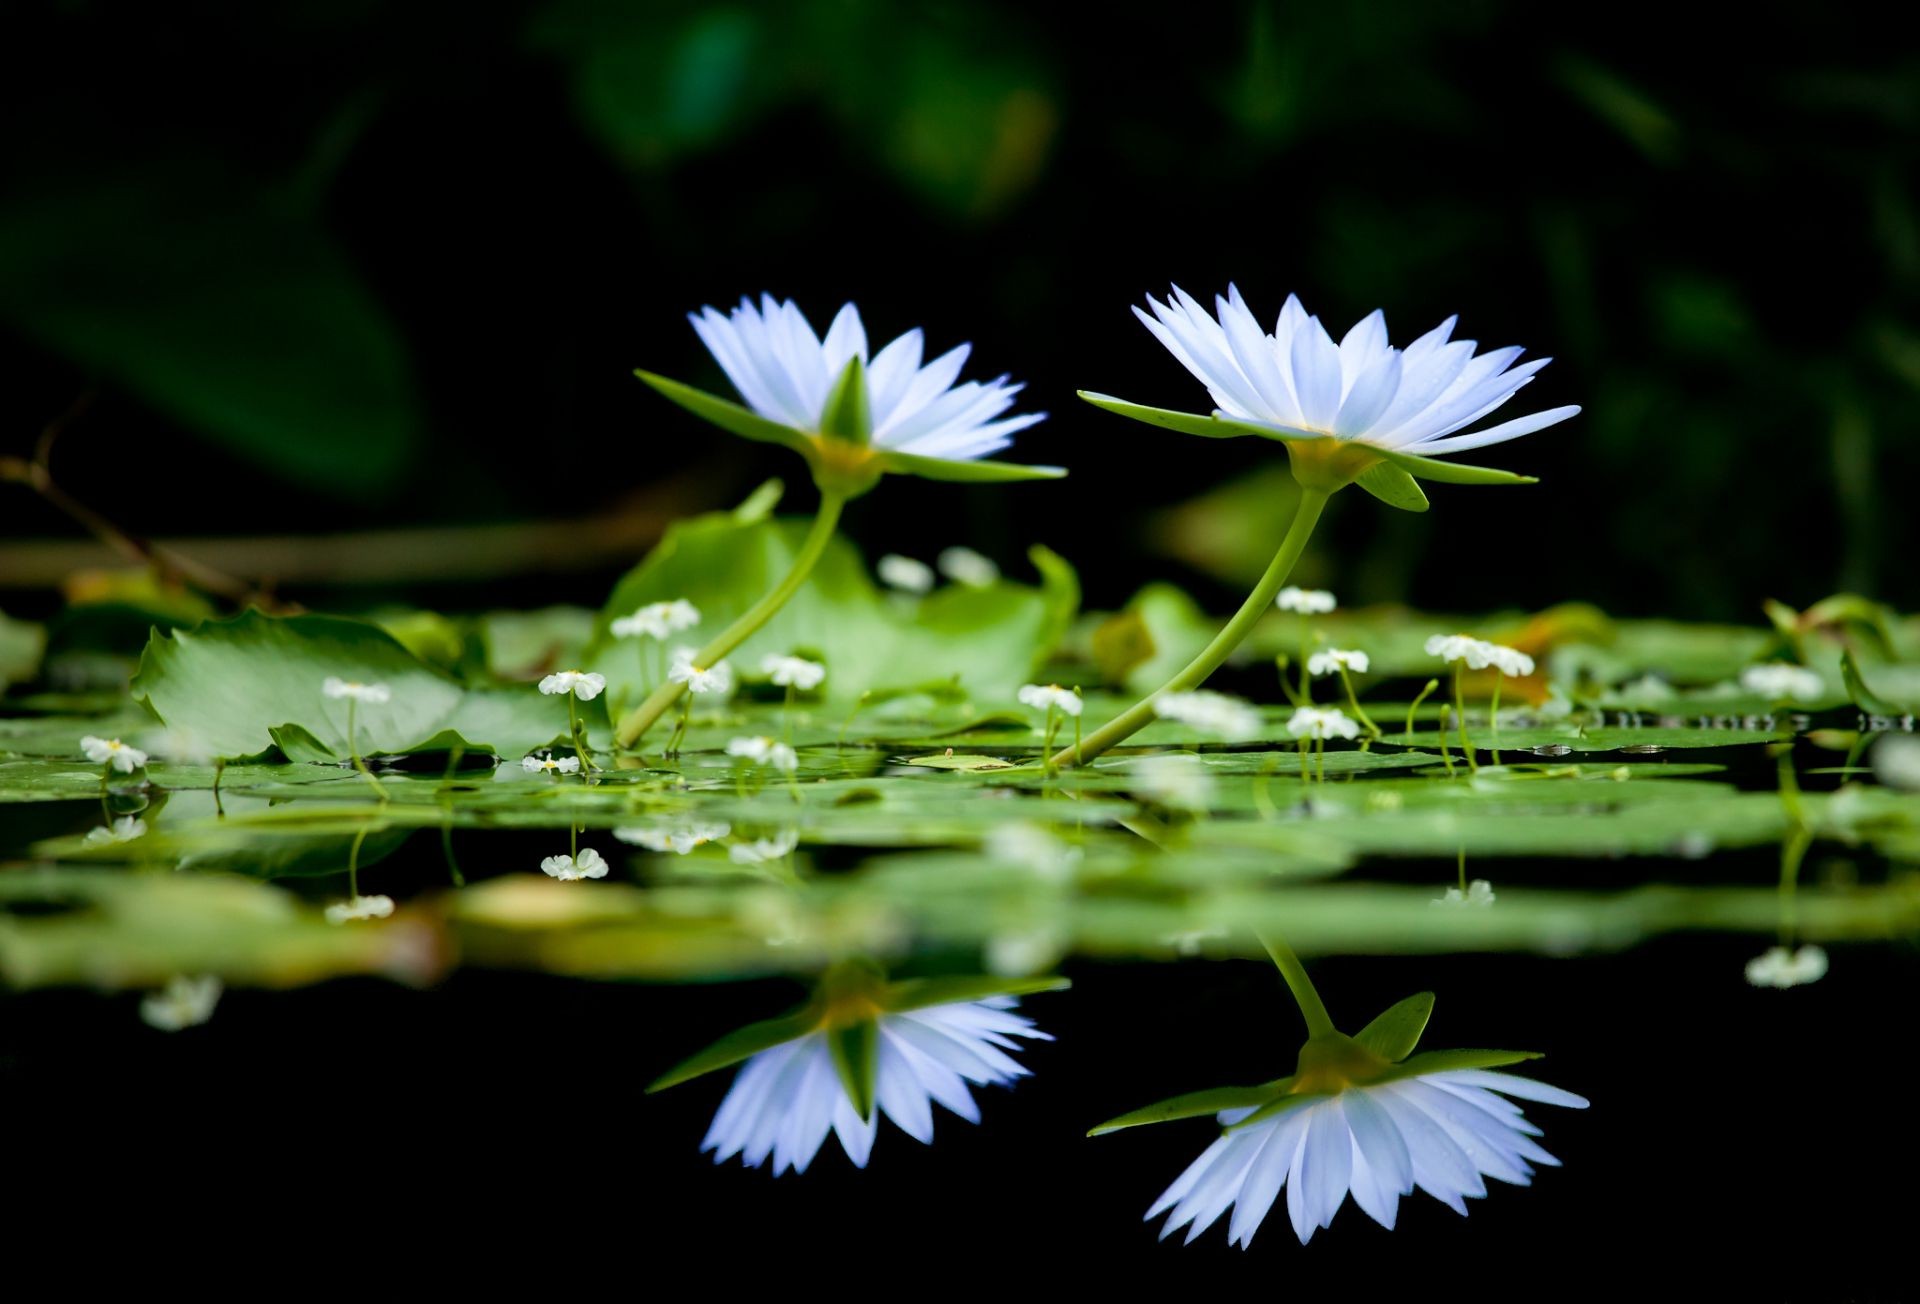 цветы в воде цветок лист сад флора лотос природа бассейн блюминг лето лили парк среды лепесток цветочные крупным планом воды красивые дикий